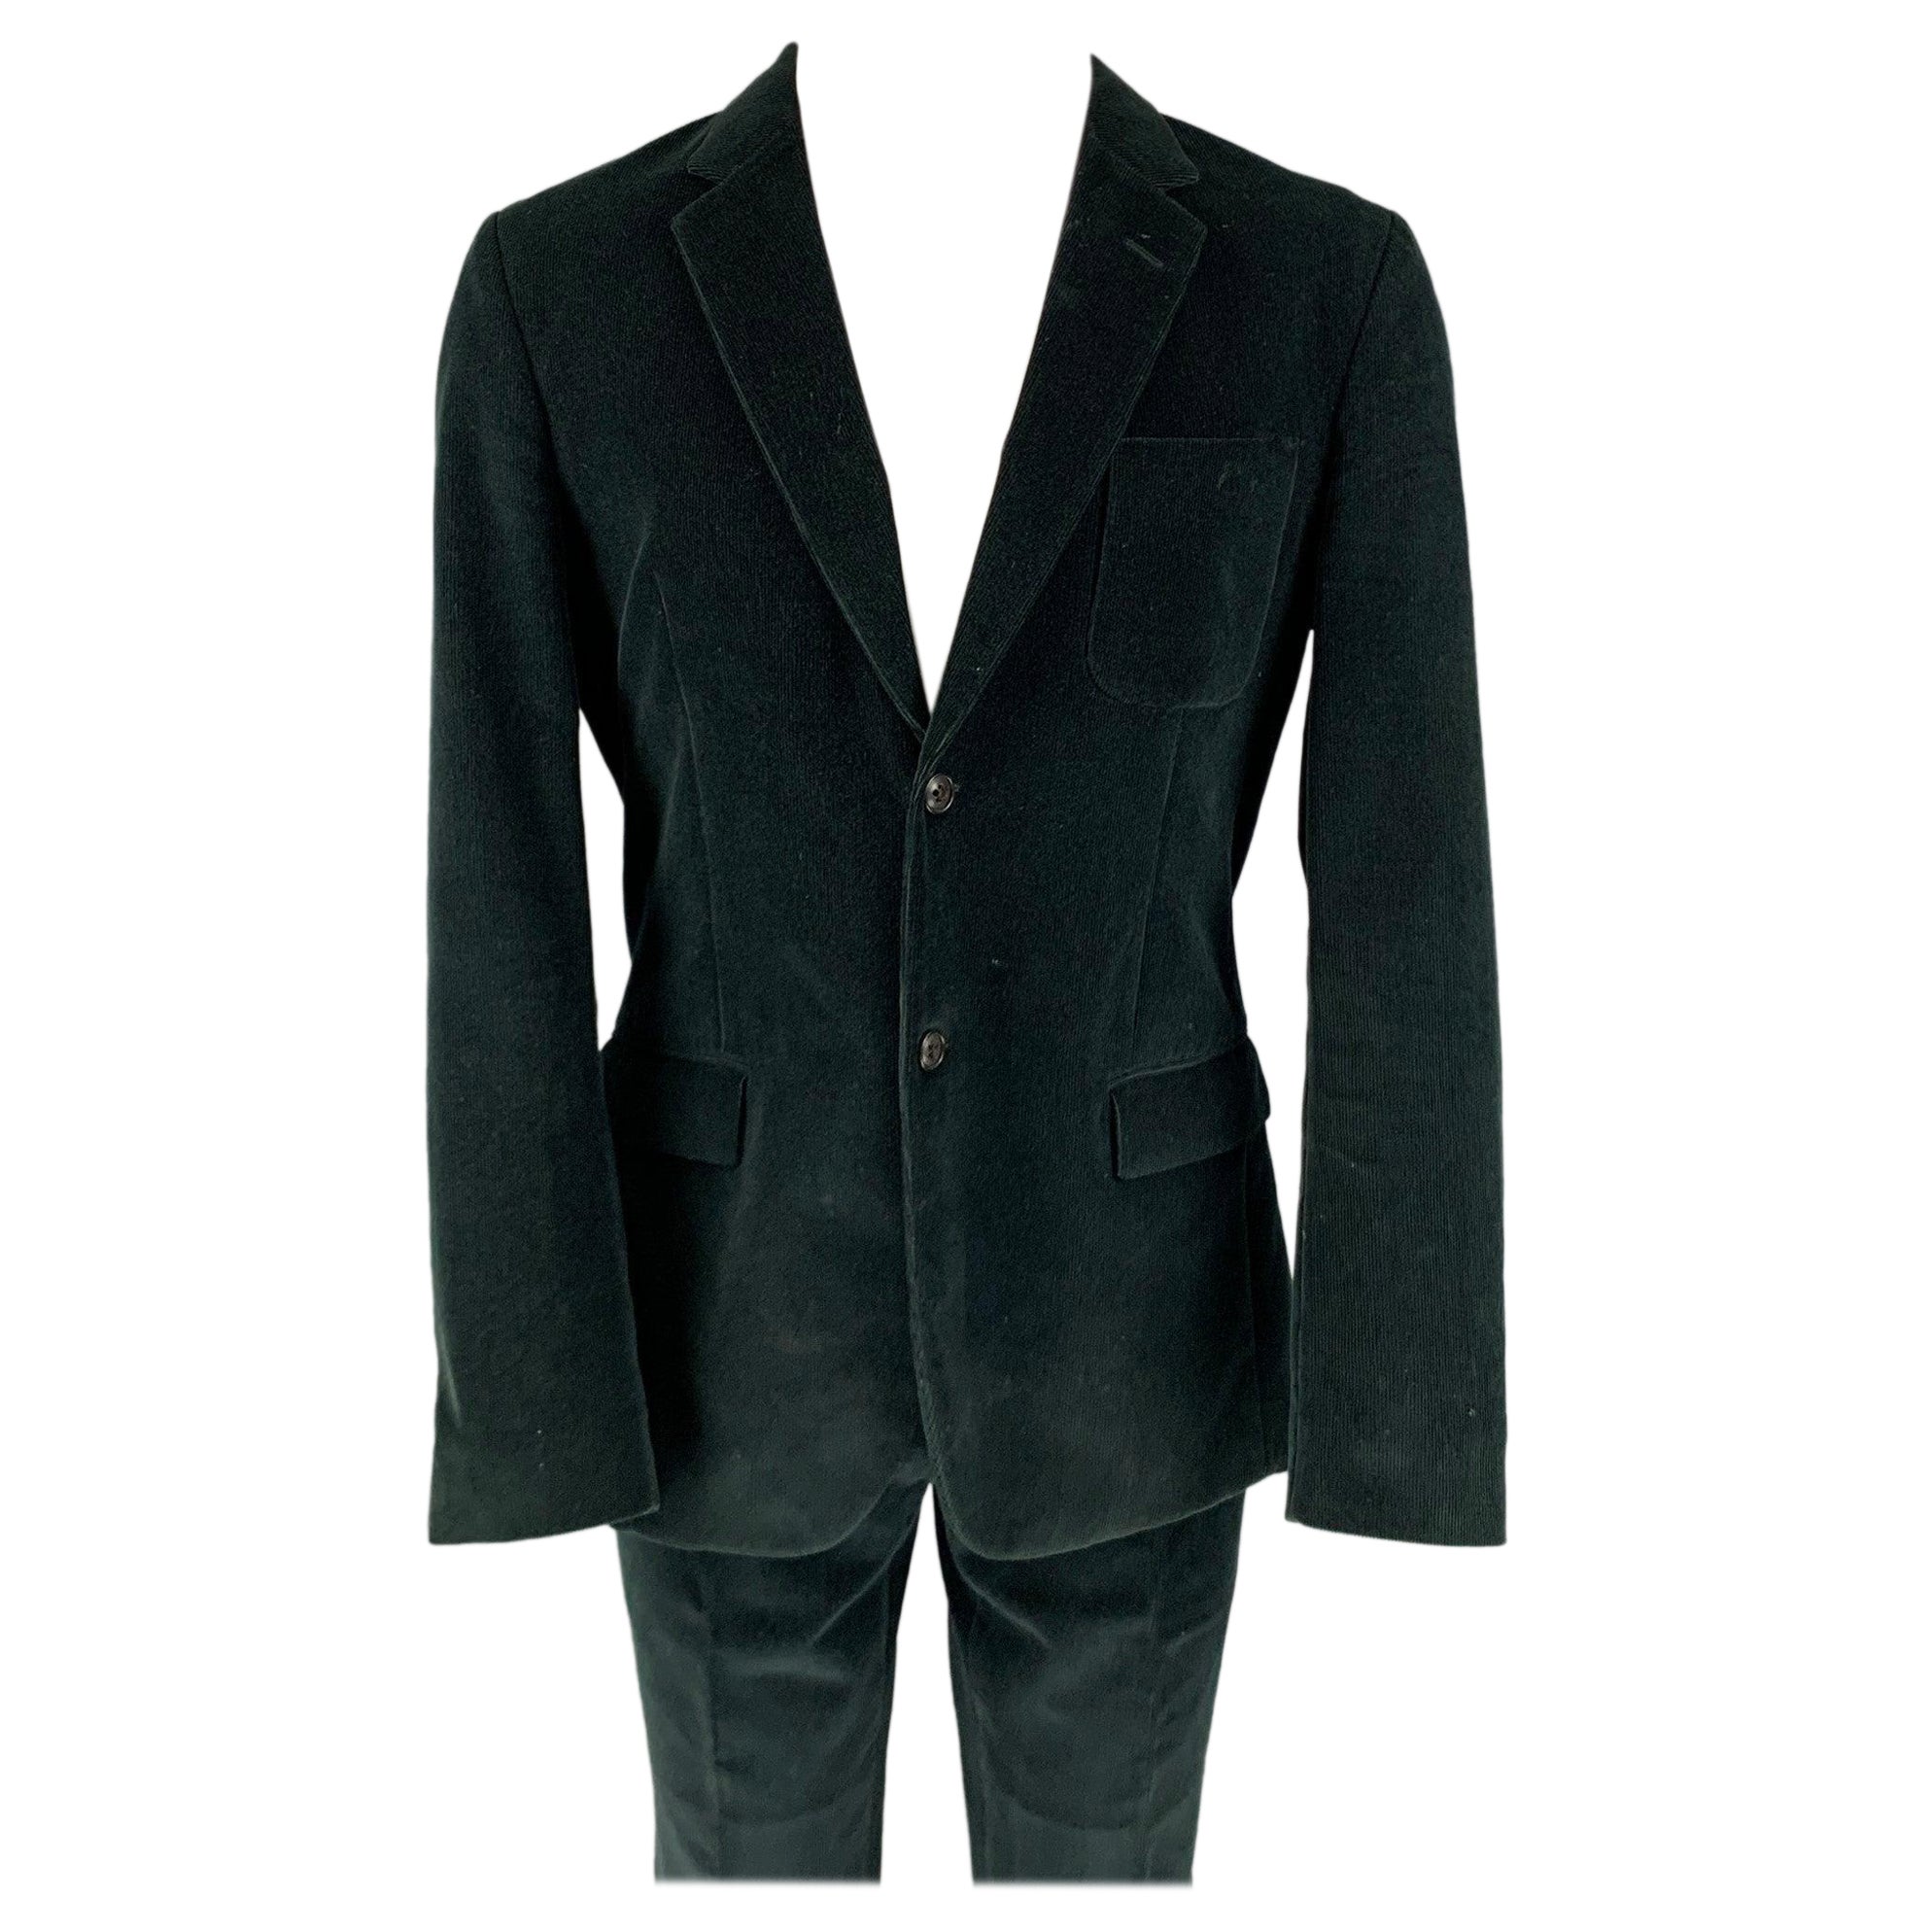 MARC JACOBS Size 40 Black Corduroy Cotton Notch Lapel Suit For Sale